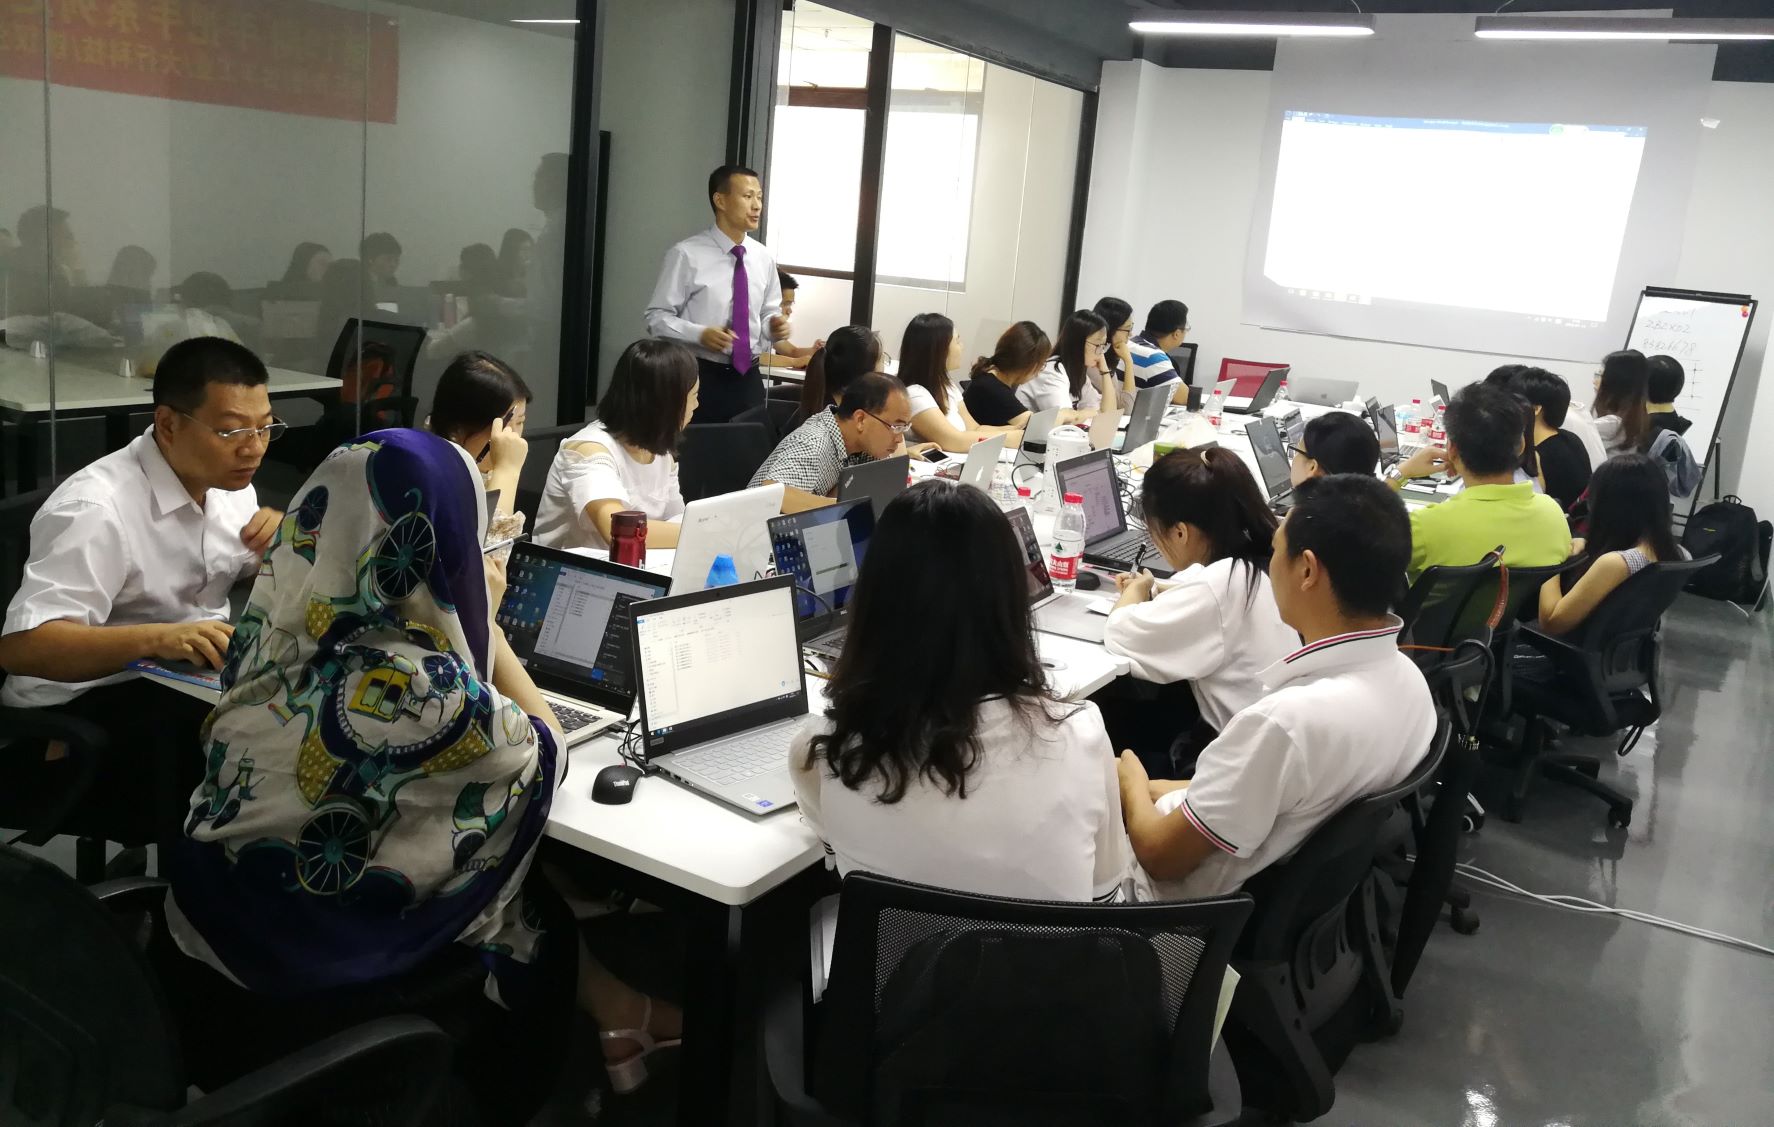 传授薪技术-19期战略薪酬课成功在深圳举办